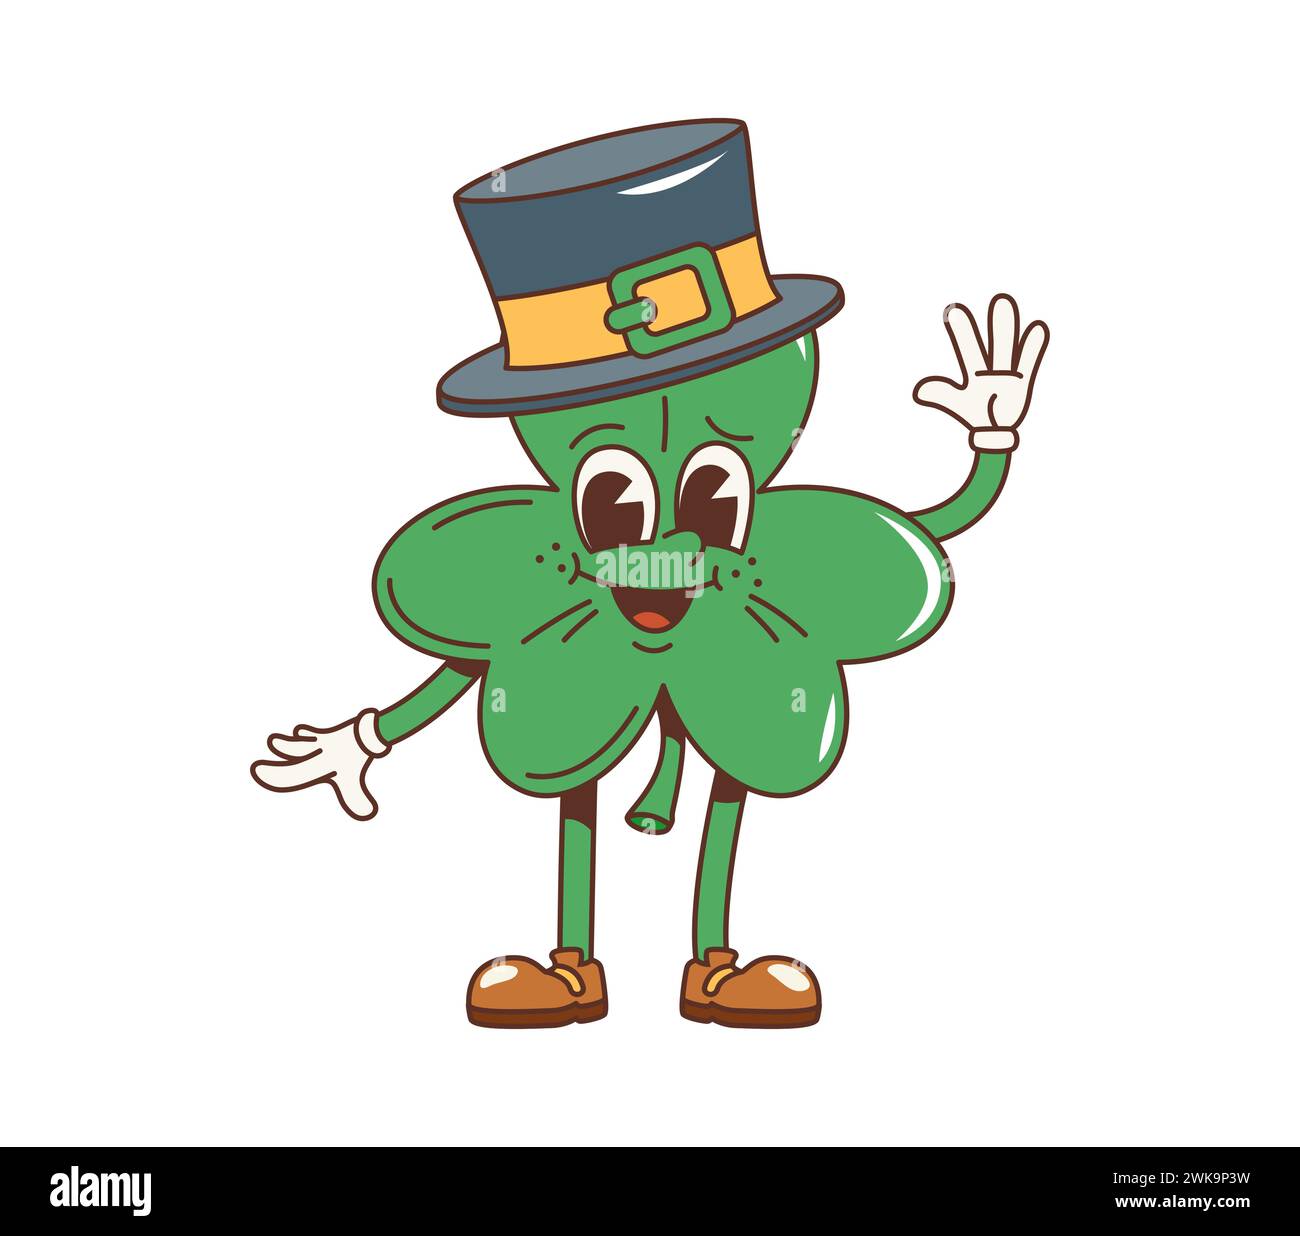 Cartoon Retro Shamrock Kleeblatt grooviger Charakter. Isolierte Vektor-Feiertagsfigur trägt einen Leprechaun-Hut, winkt die Hand mit einem freundlichen Lächeln und verbreitet Freude und Glück für den Irish Patrick Day Stock Vektor